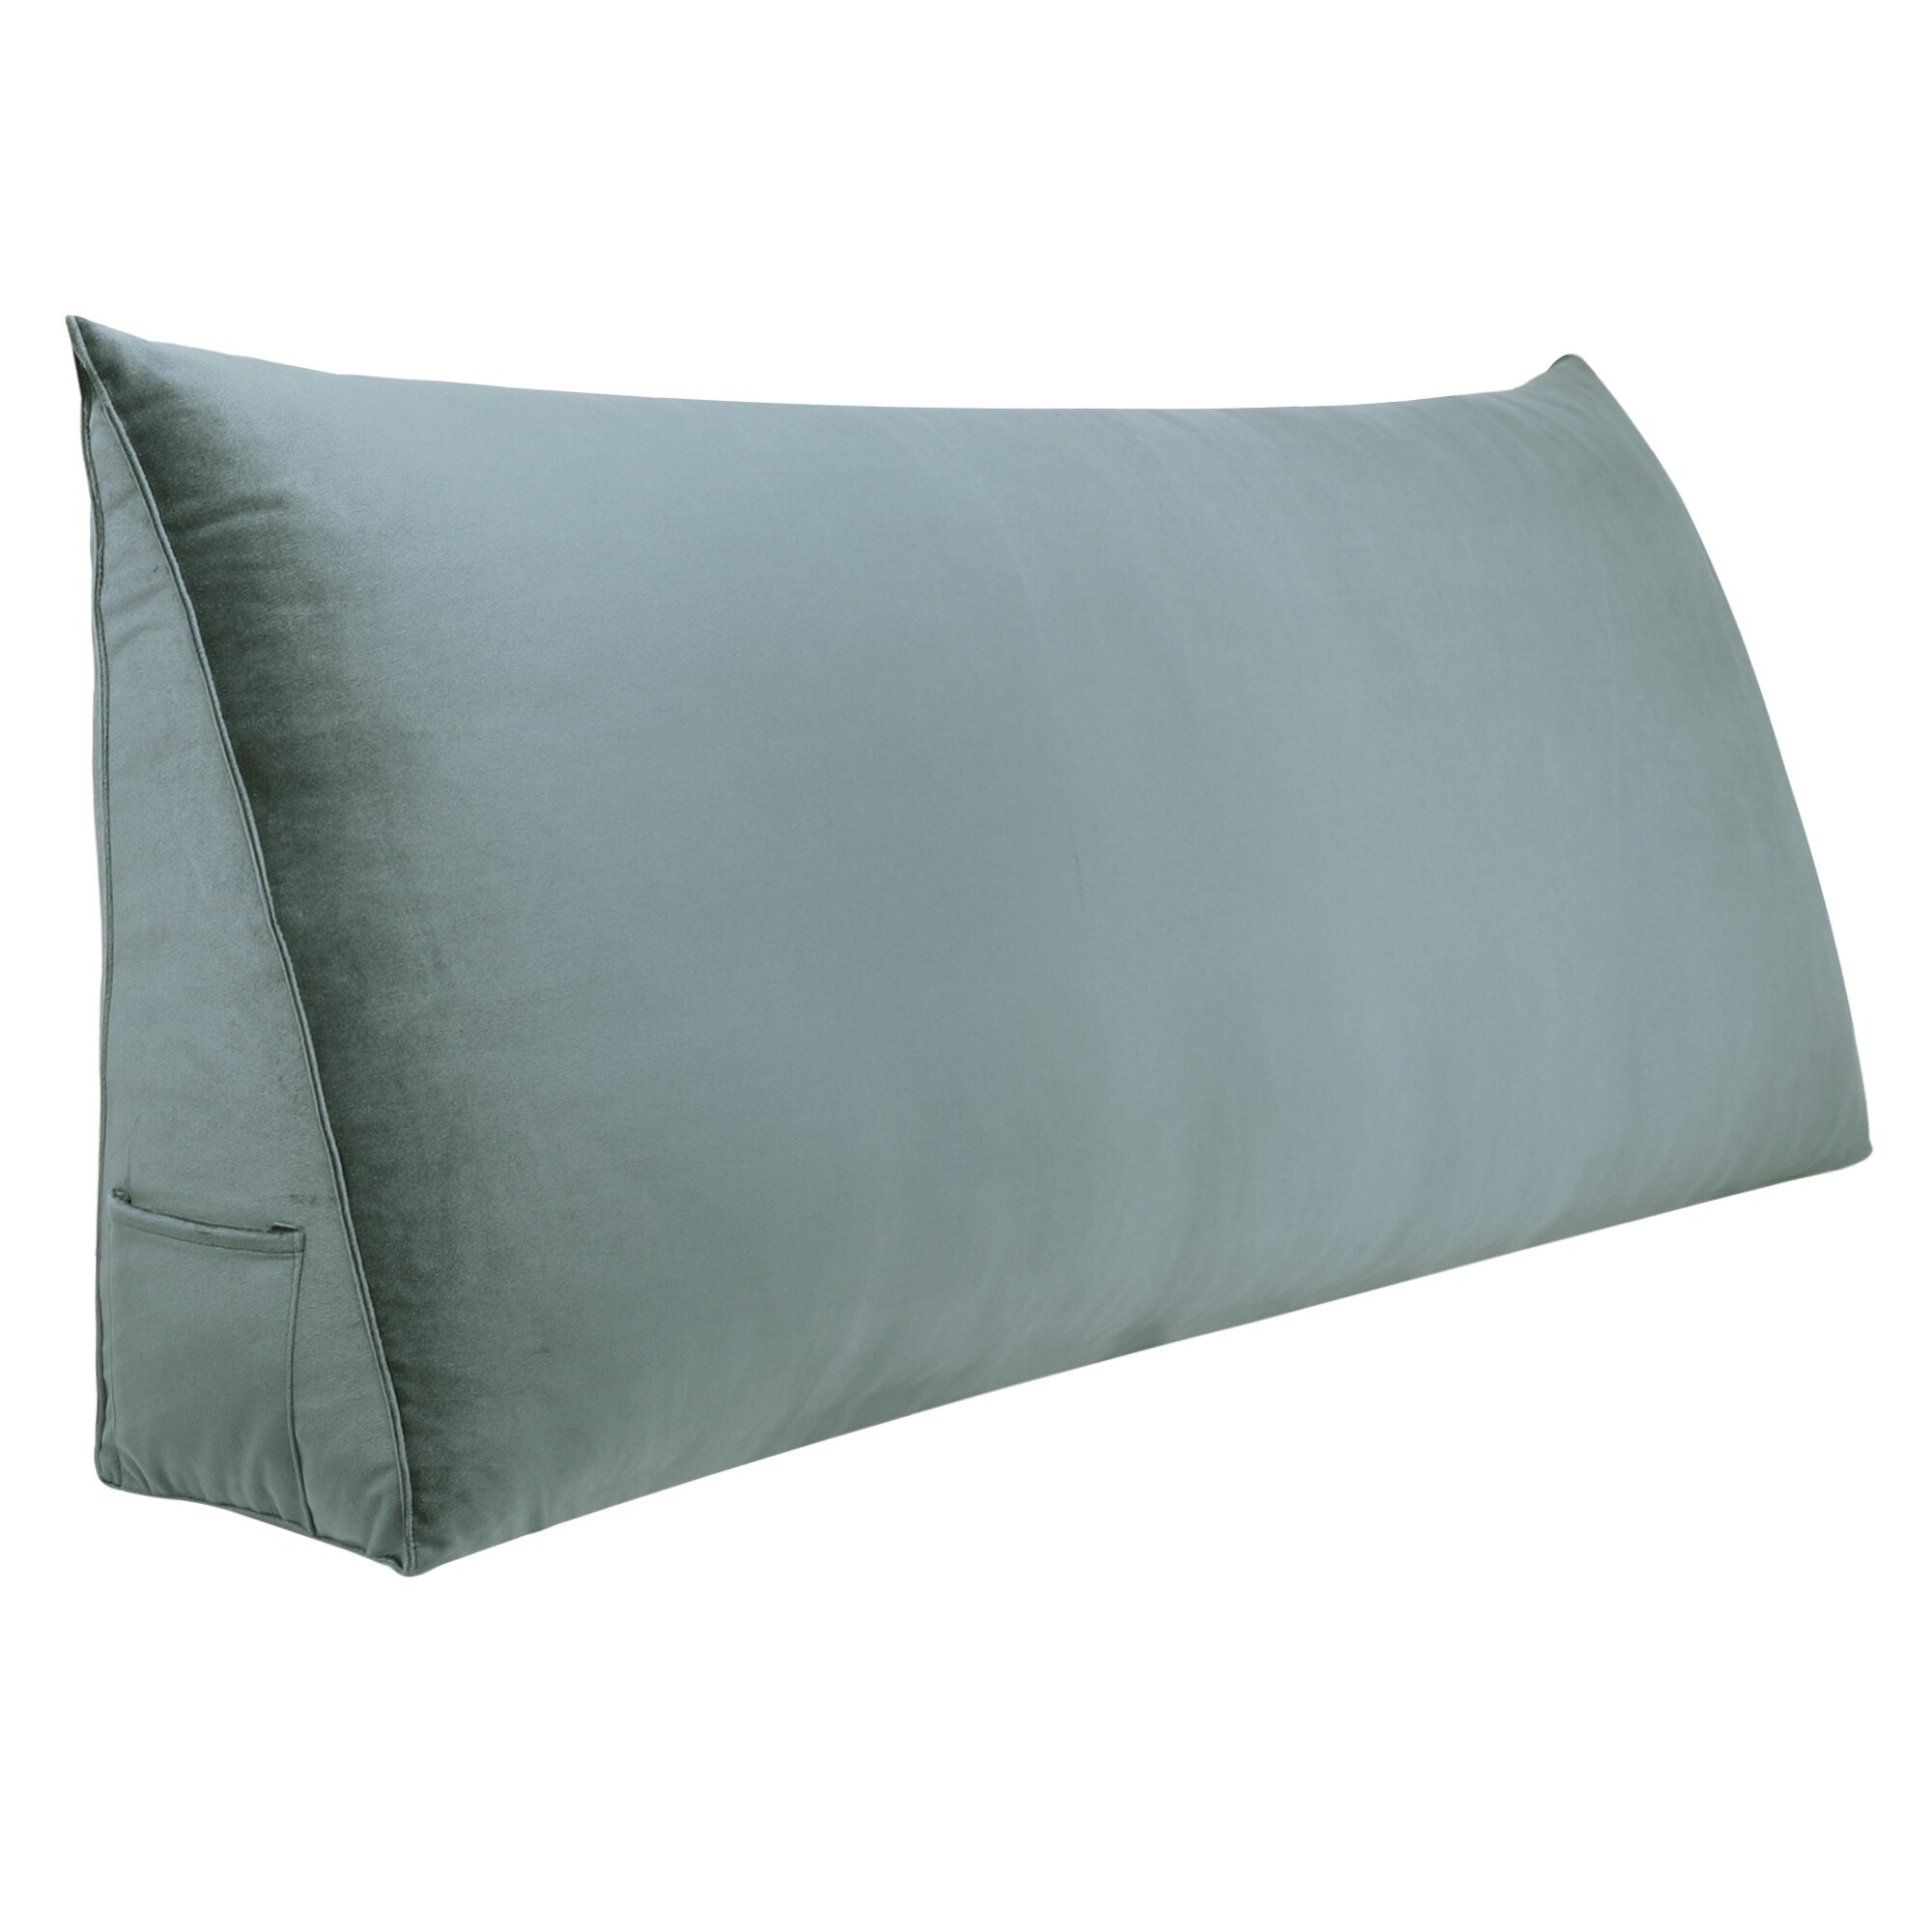 WOWMAX Rectangular Headboard Reading Body Pillow Bedside Oversized